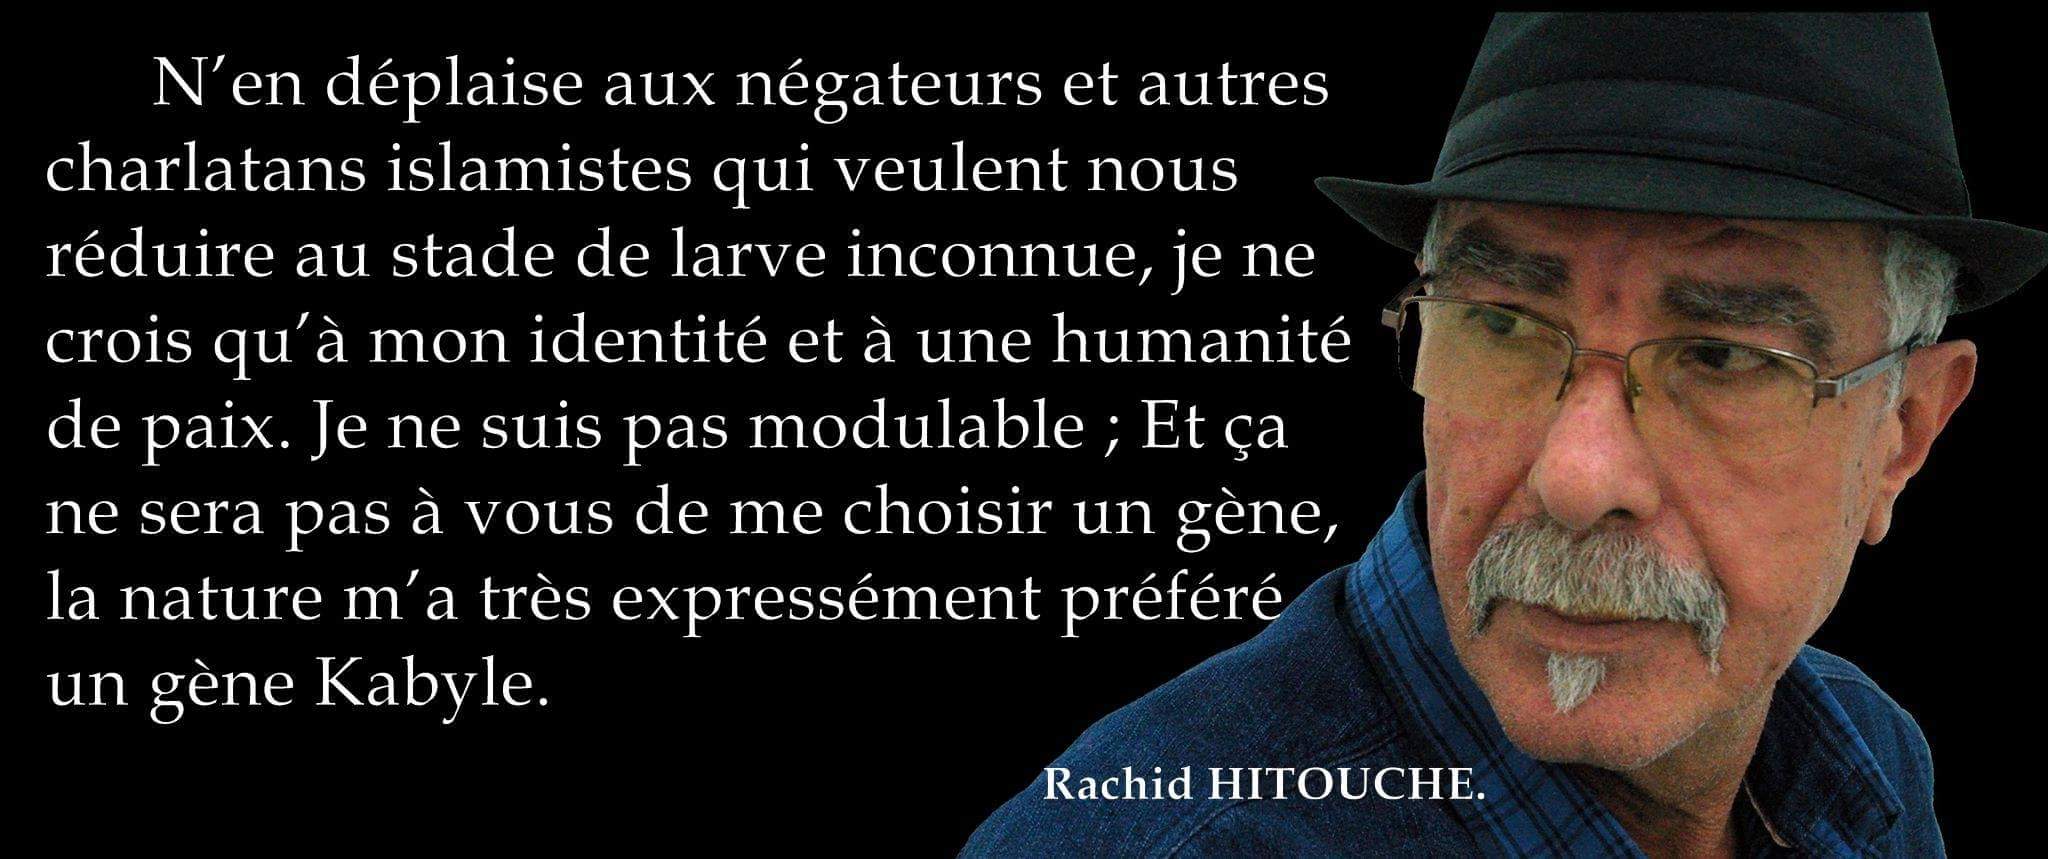 Rachid Hitouche : « Même à l’apogée de l’intégrisme islamiste, je n’ai pas eu à constater autant de casernements militaires » (interview)